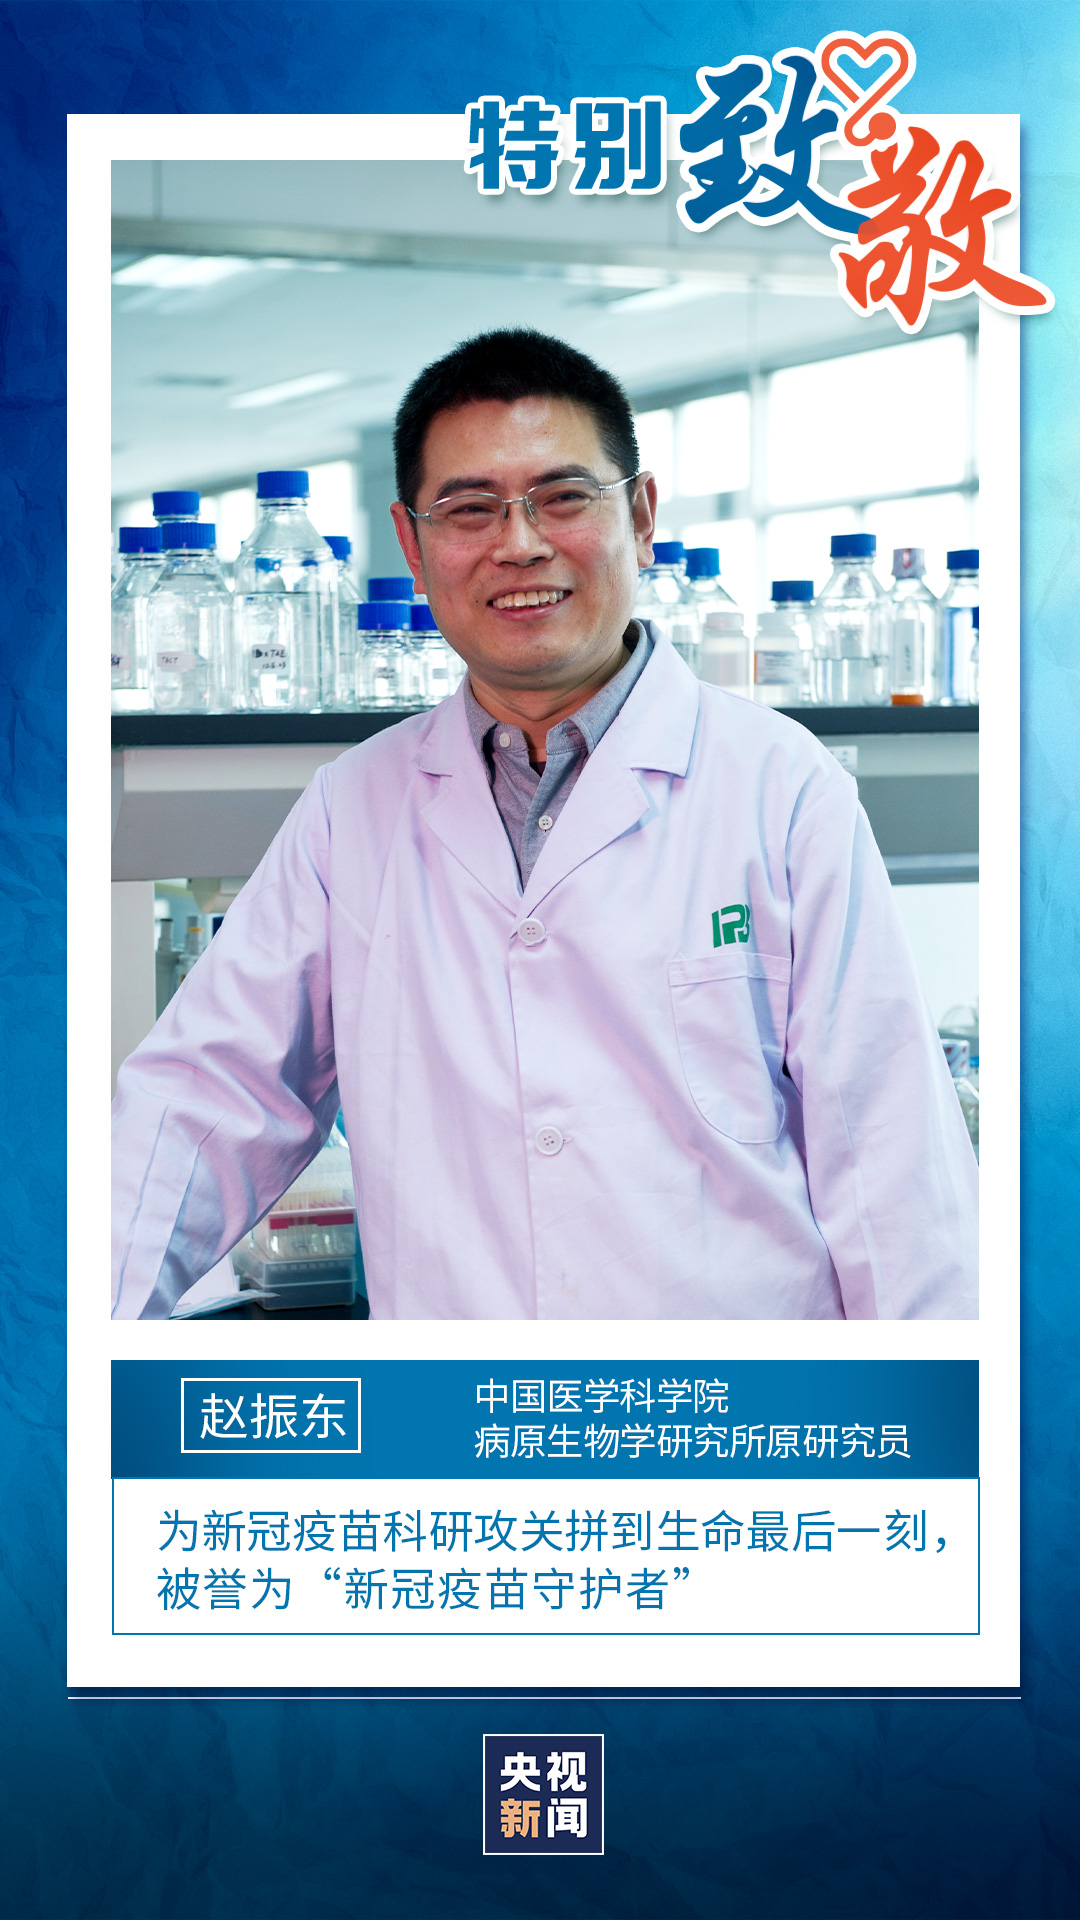 今天我们还要特别致敬一位医者.他叫赵振东,被称为"新冠疫苗守护者".